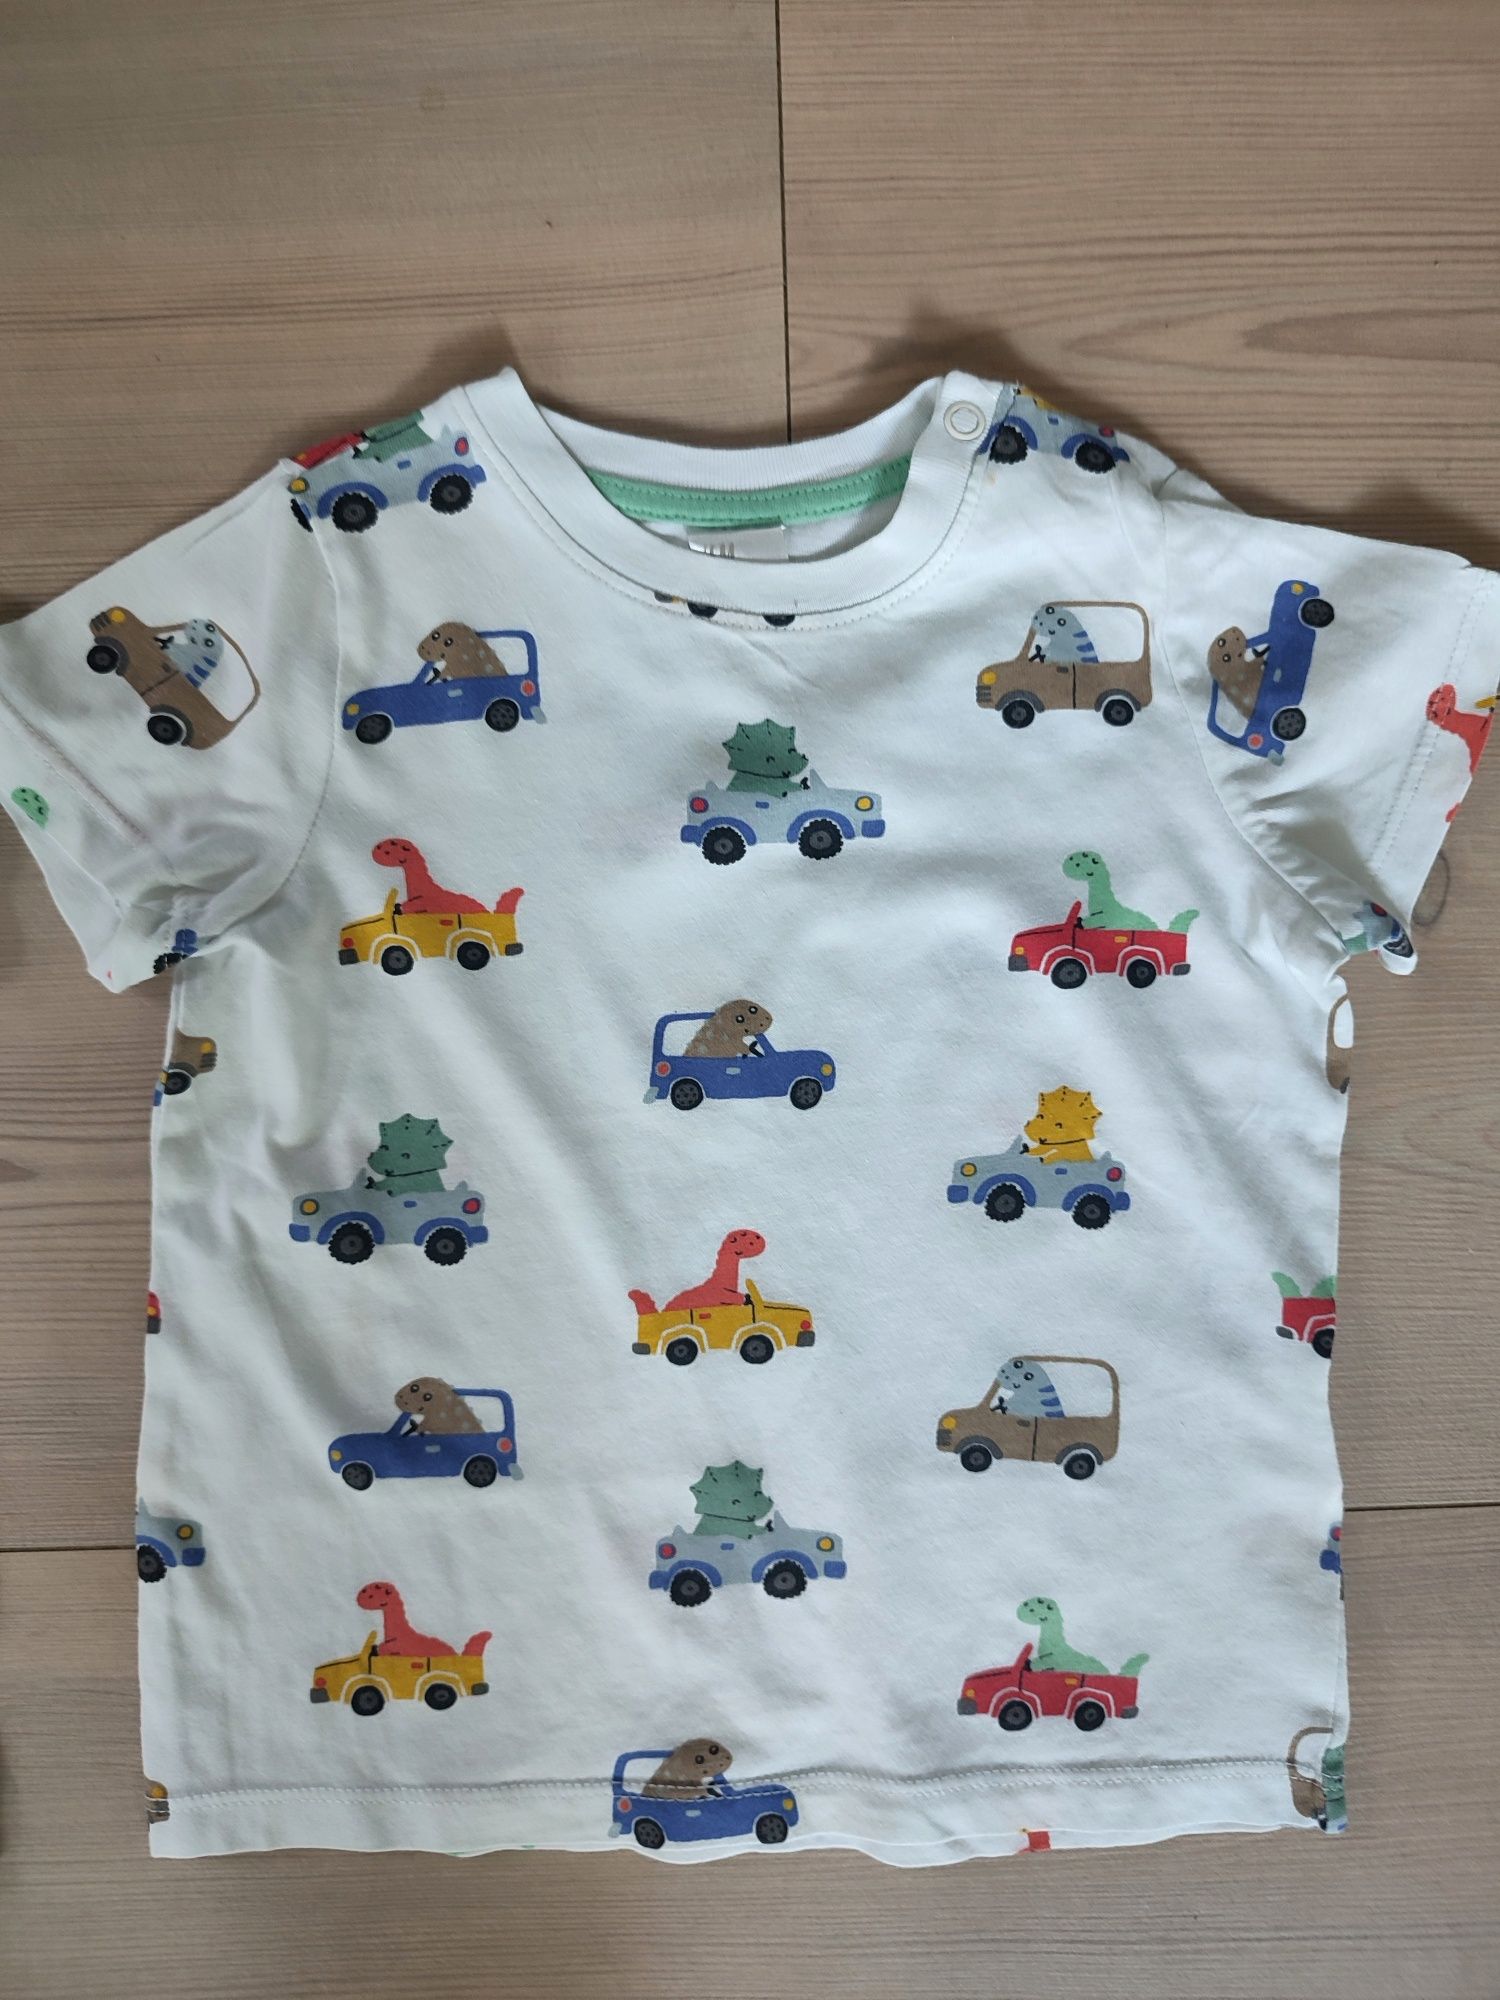 H&M koszulki t-shirt na lato 80 auta pojazdy misie koala lindex next